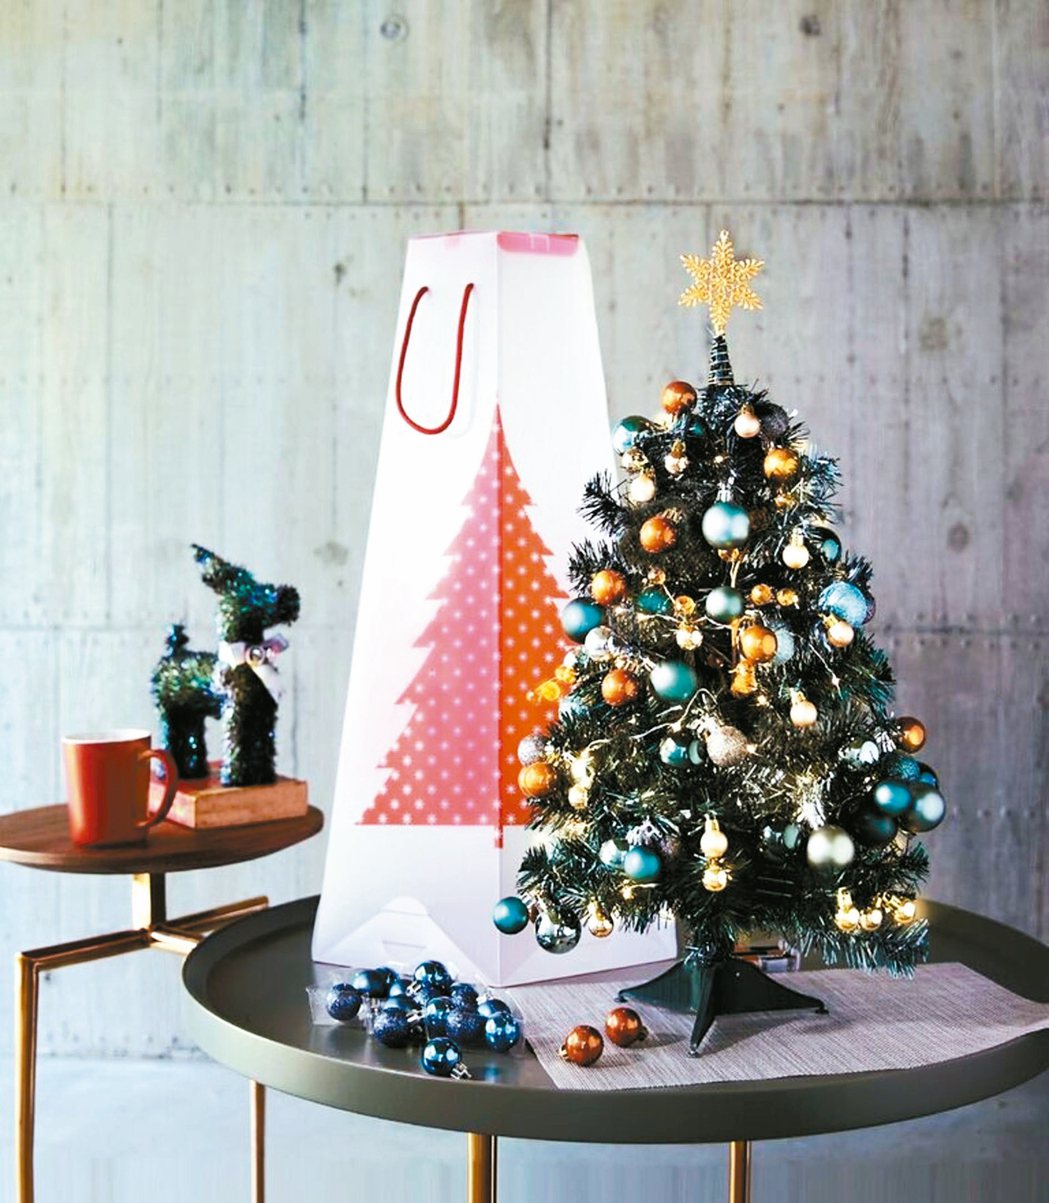 耶誕樹加上小禮物，讓節慶氣氛更濃厚。 HOLA／提供